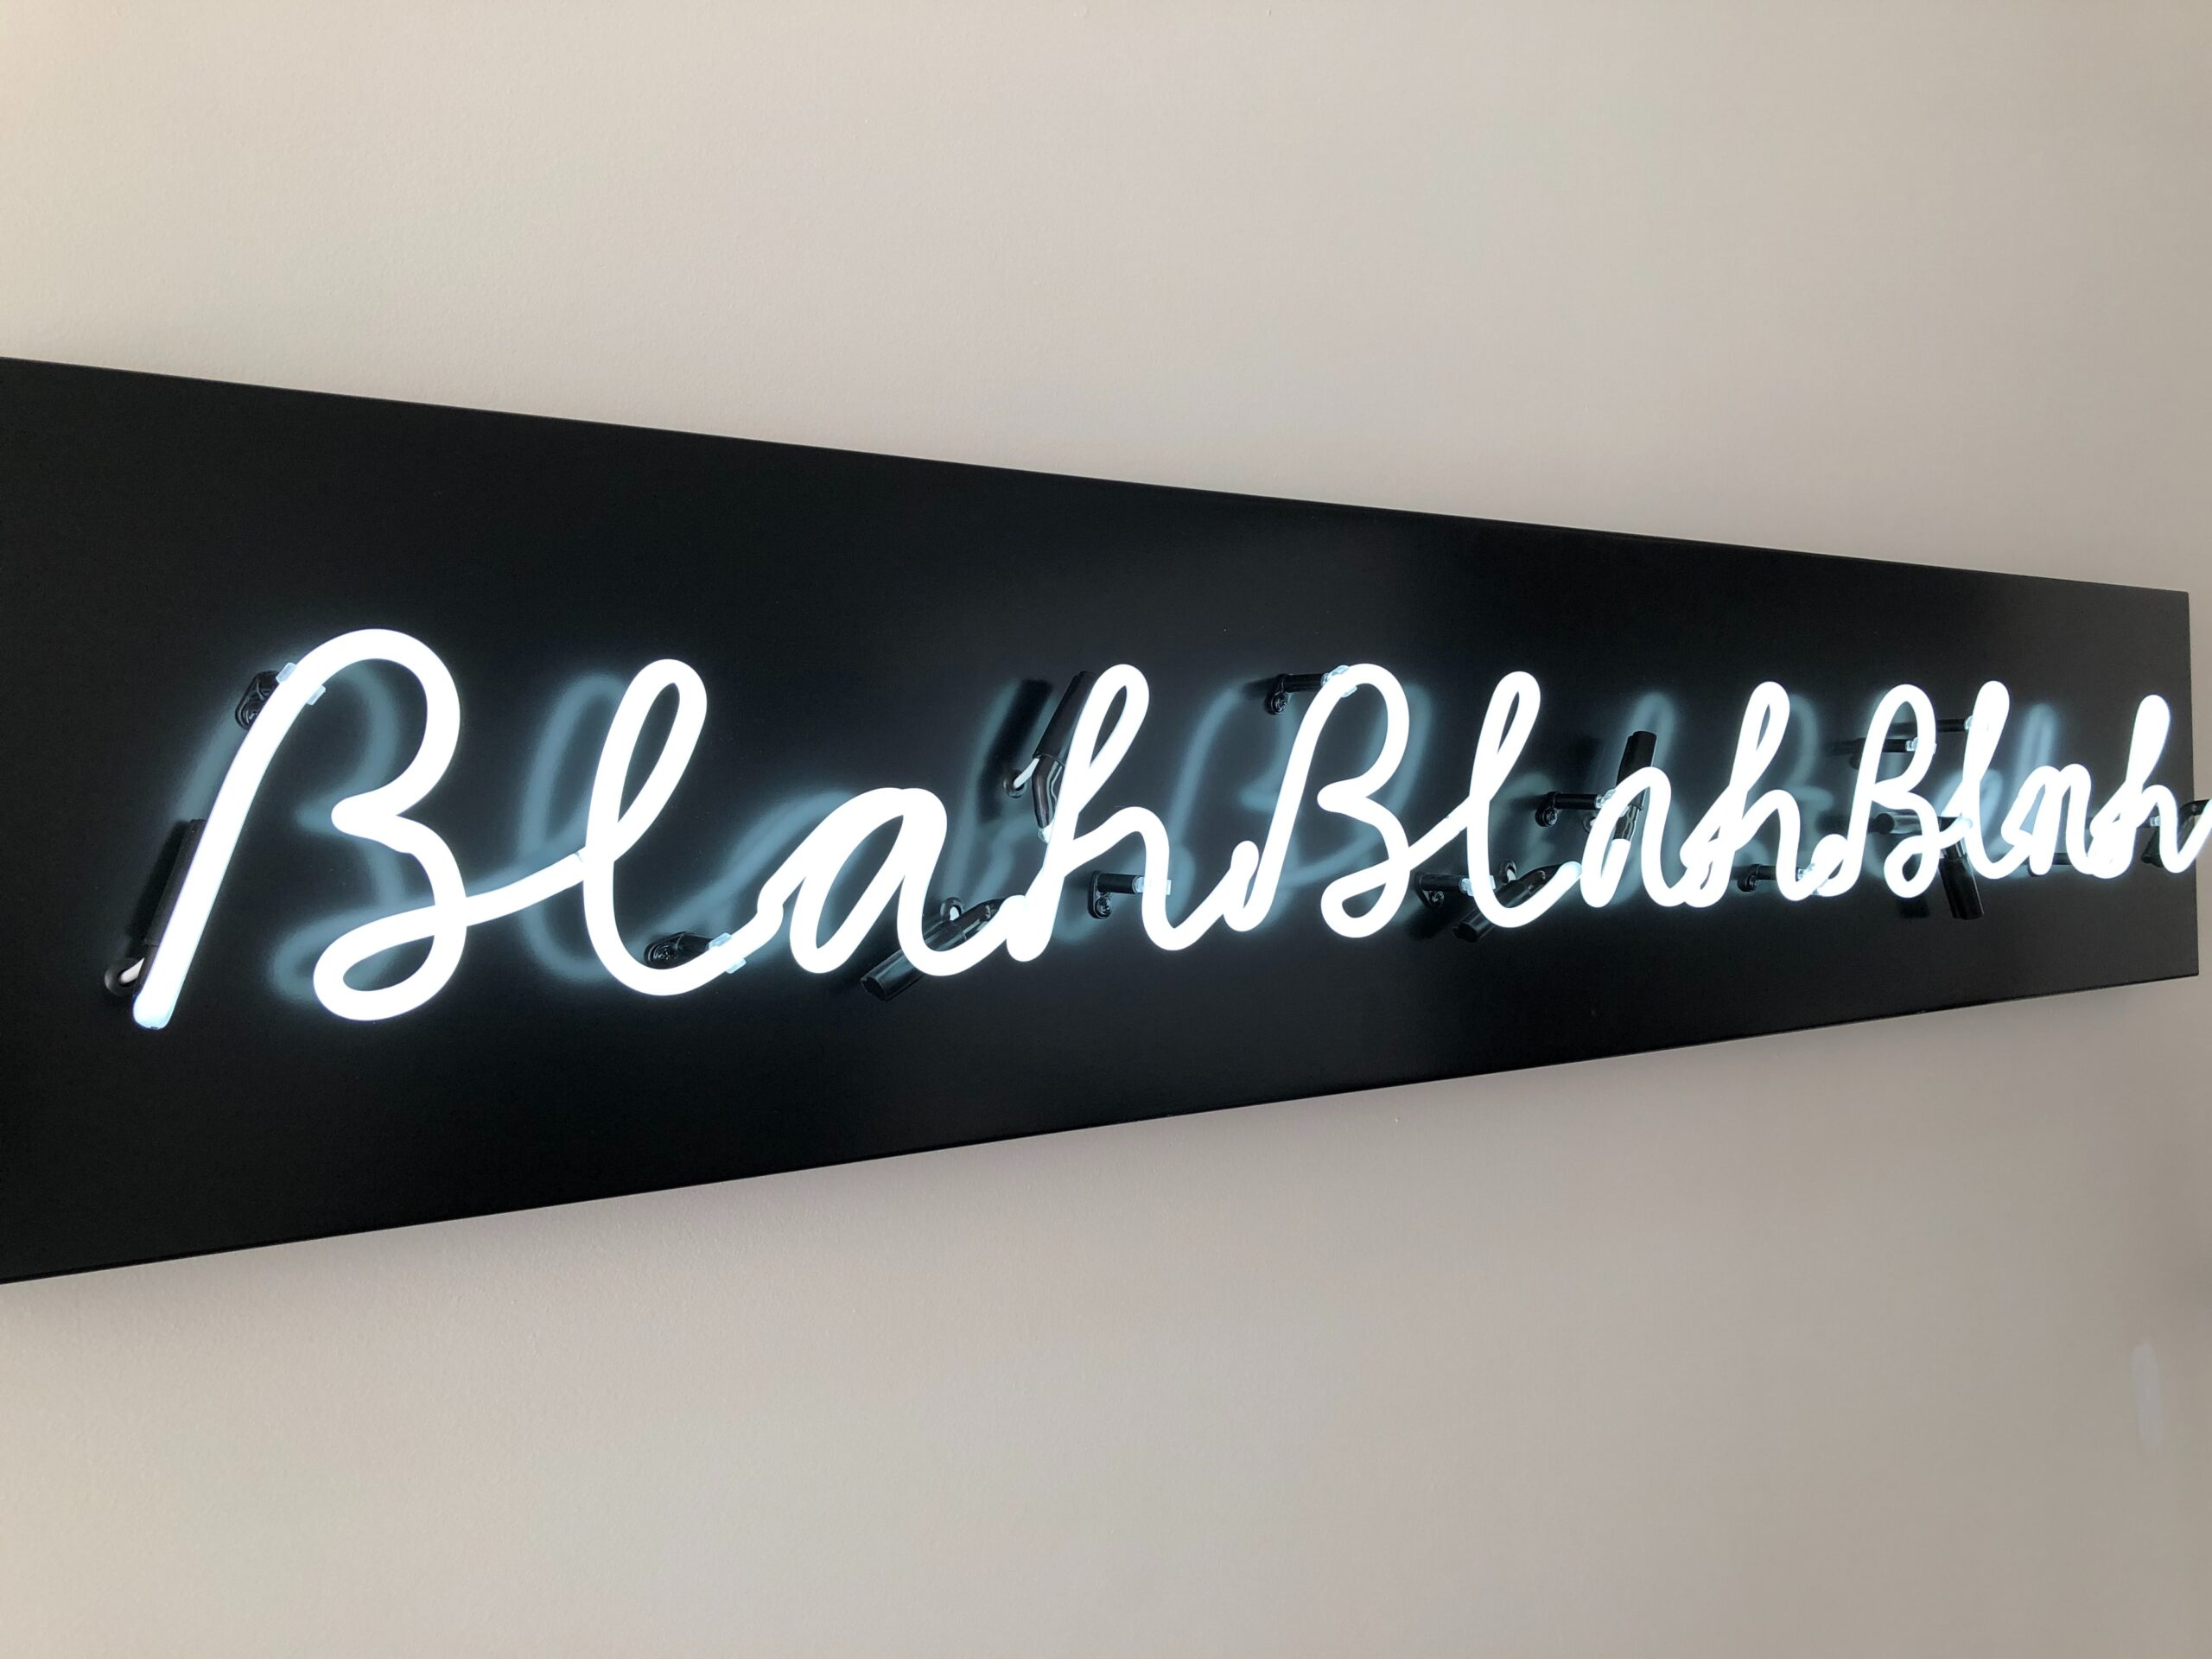 sign that reads "blah blah blah" in blue lighting